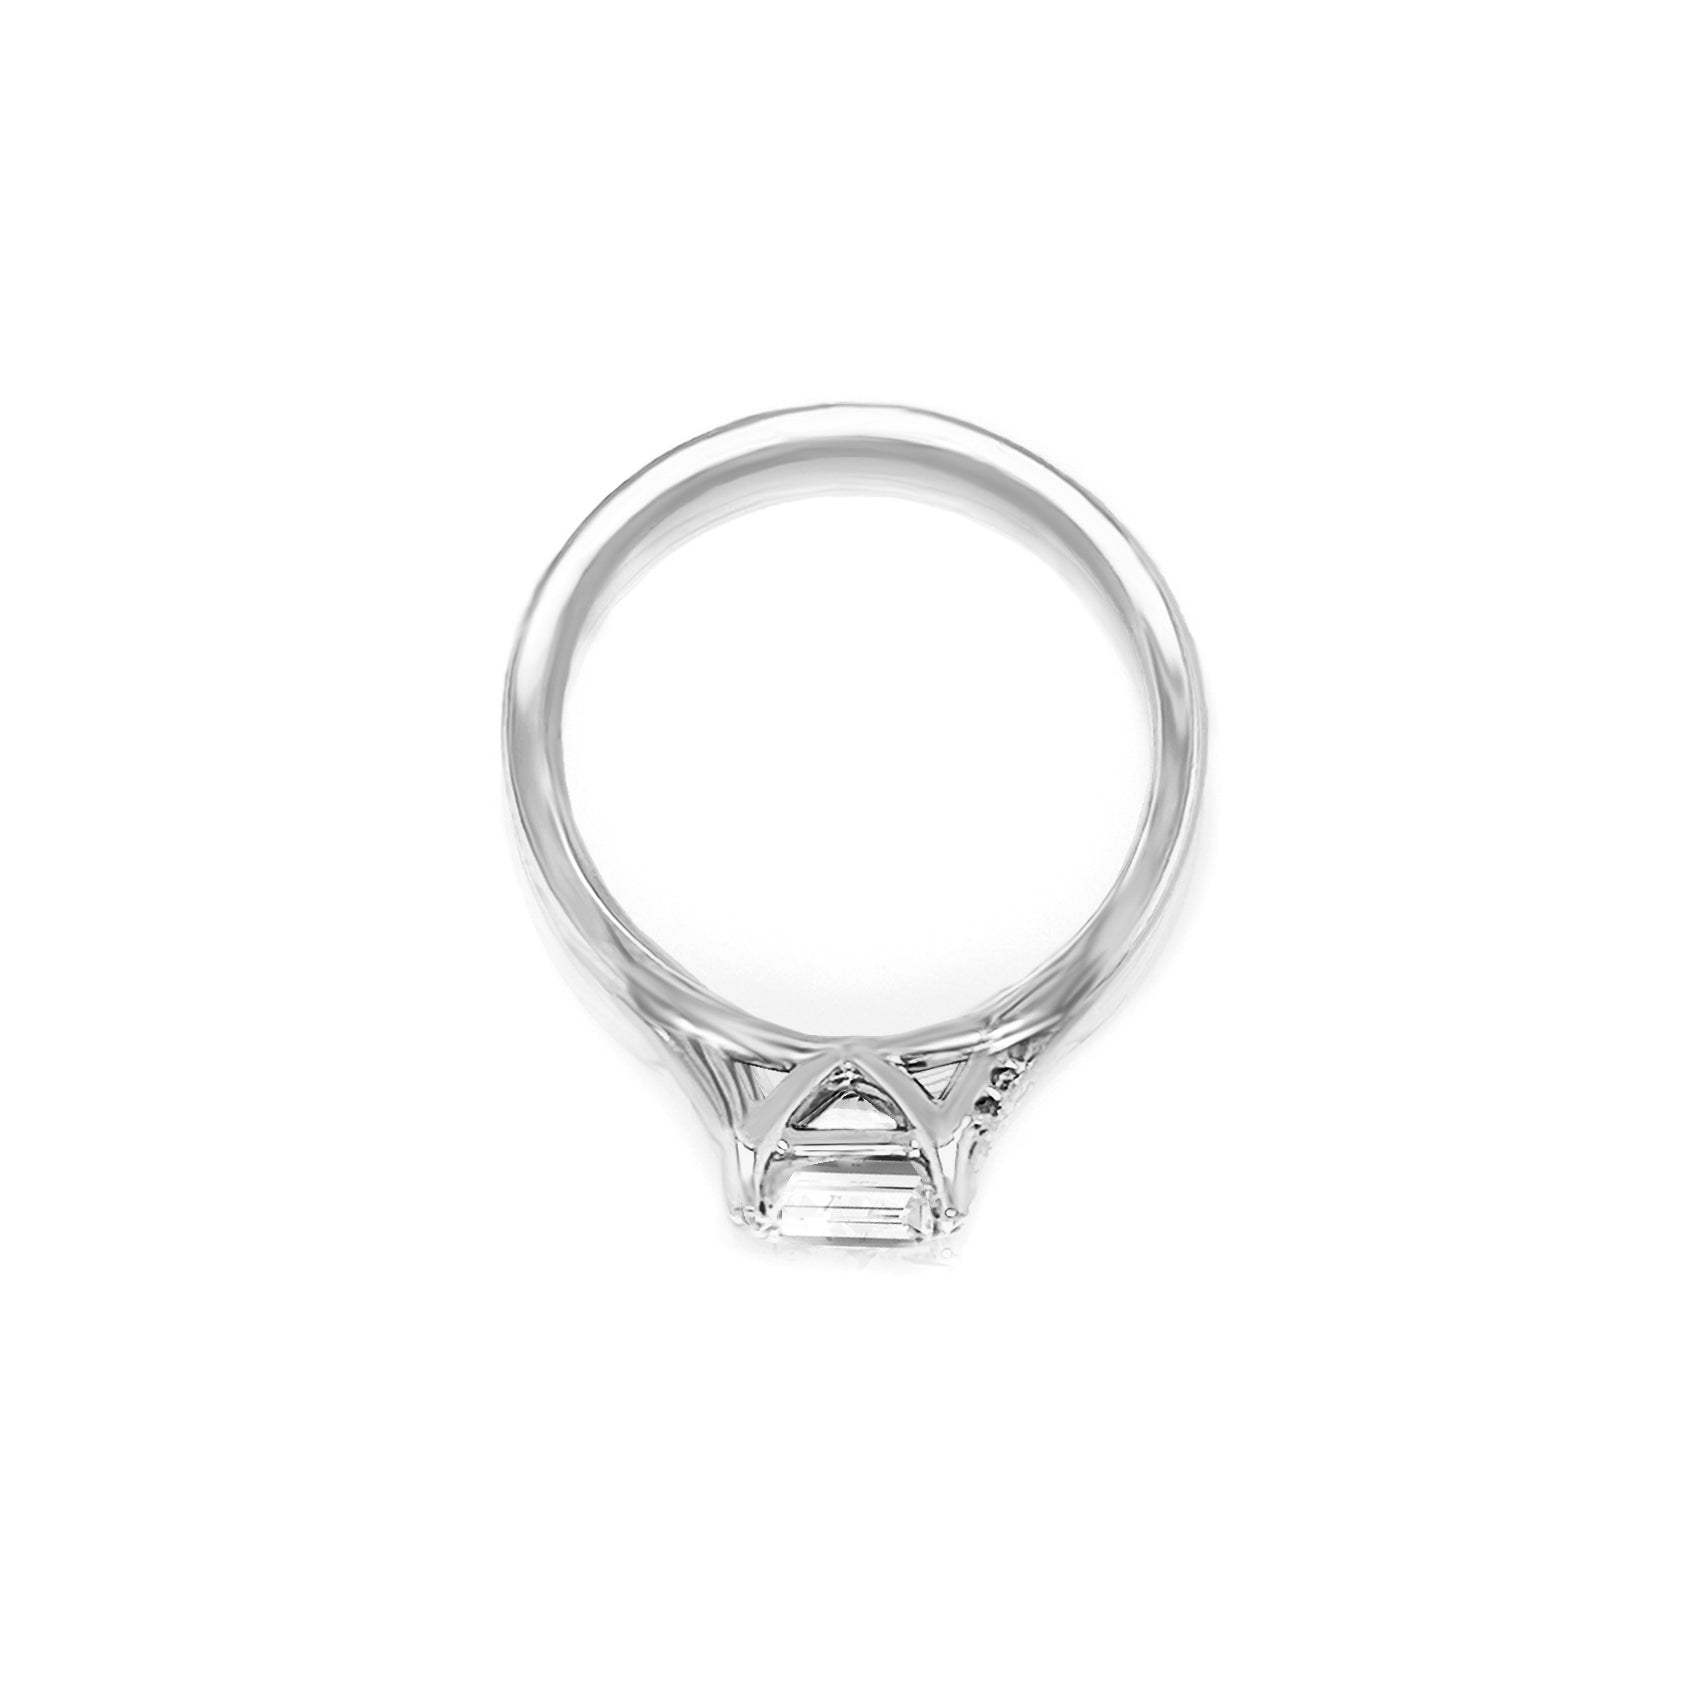 Emmeline Engagement Ring